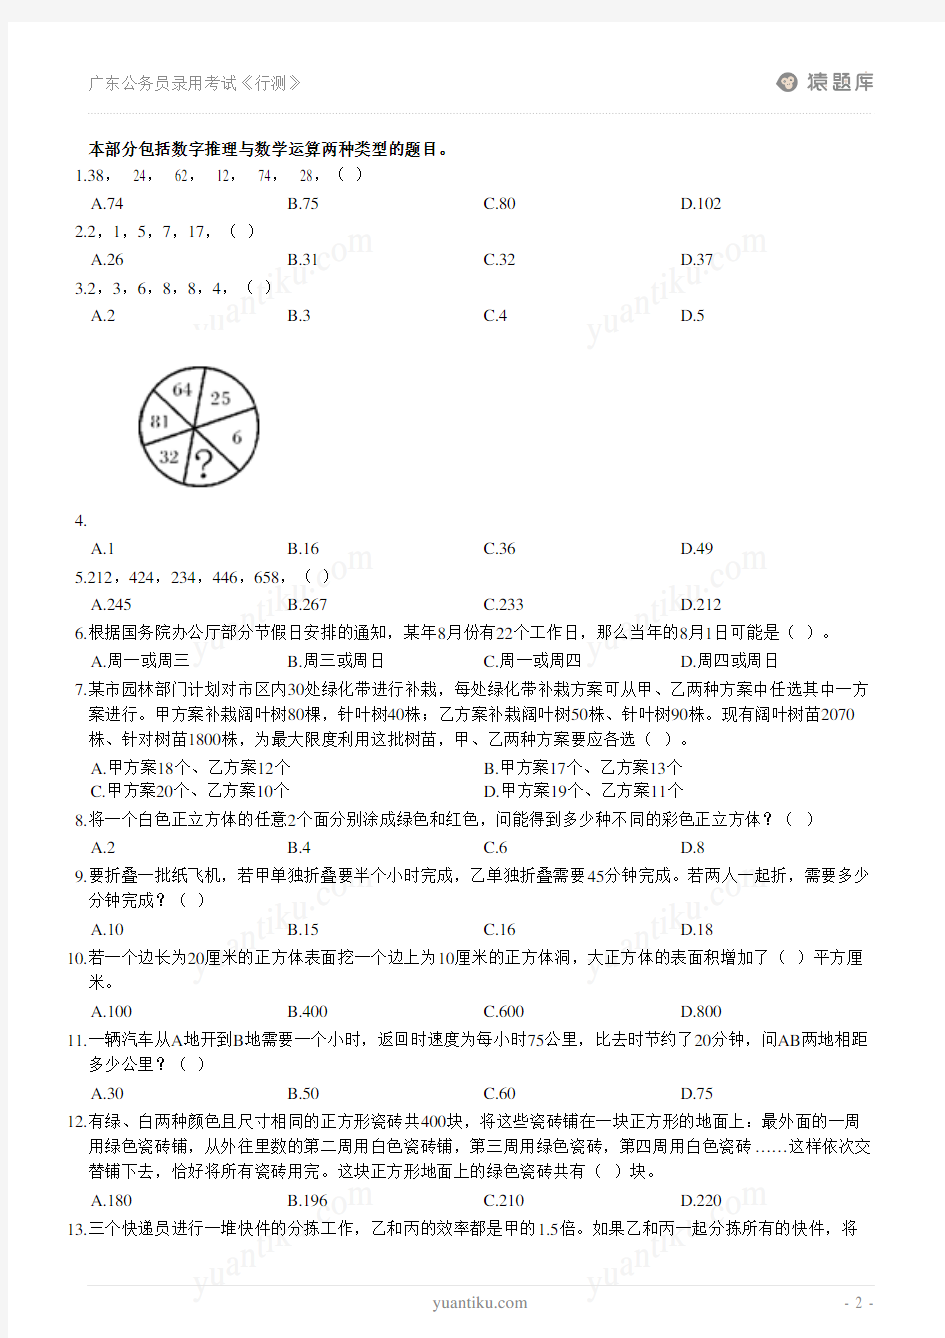 2014广东公务员录用考试《行测》模拟题 (1)